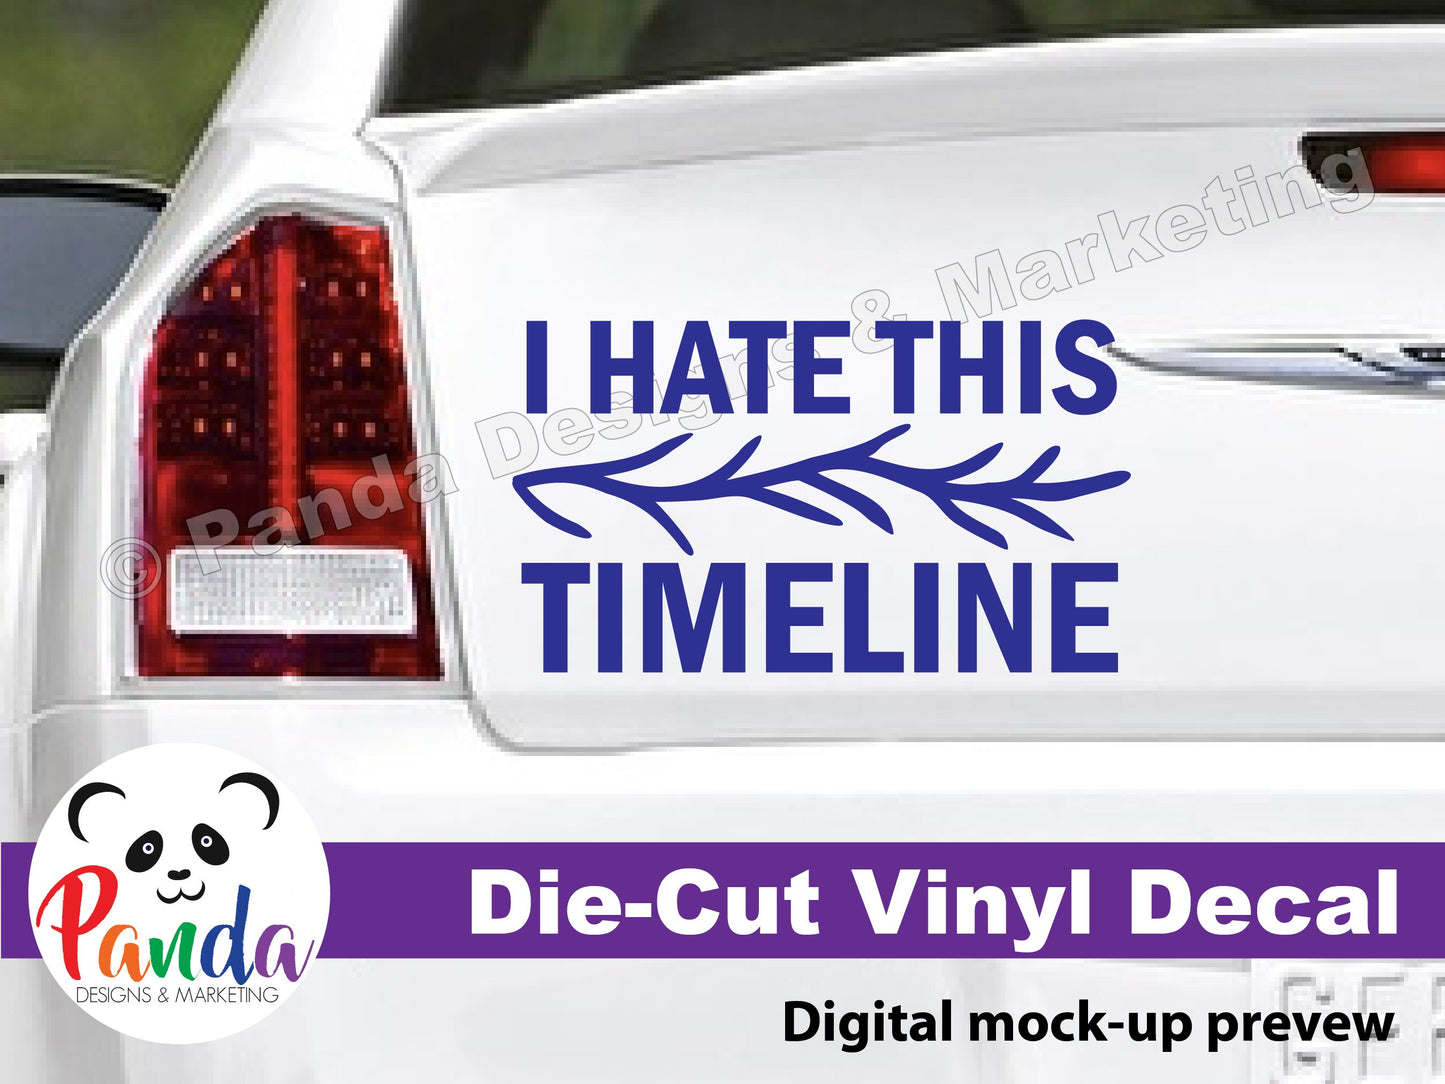 I hate this timeline vinyl die-cut decal